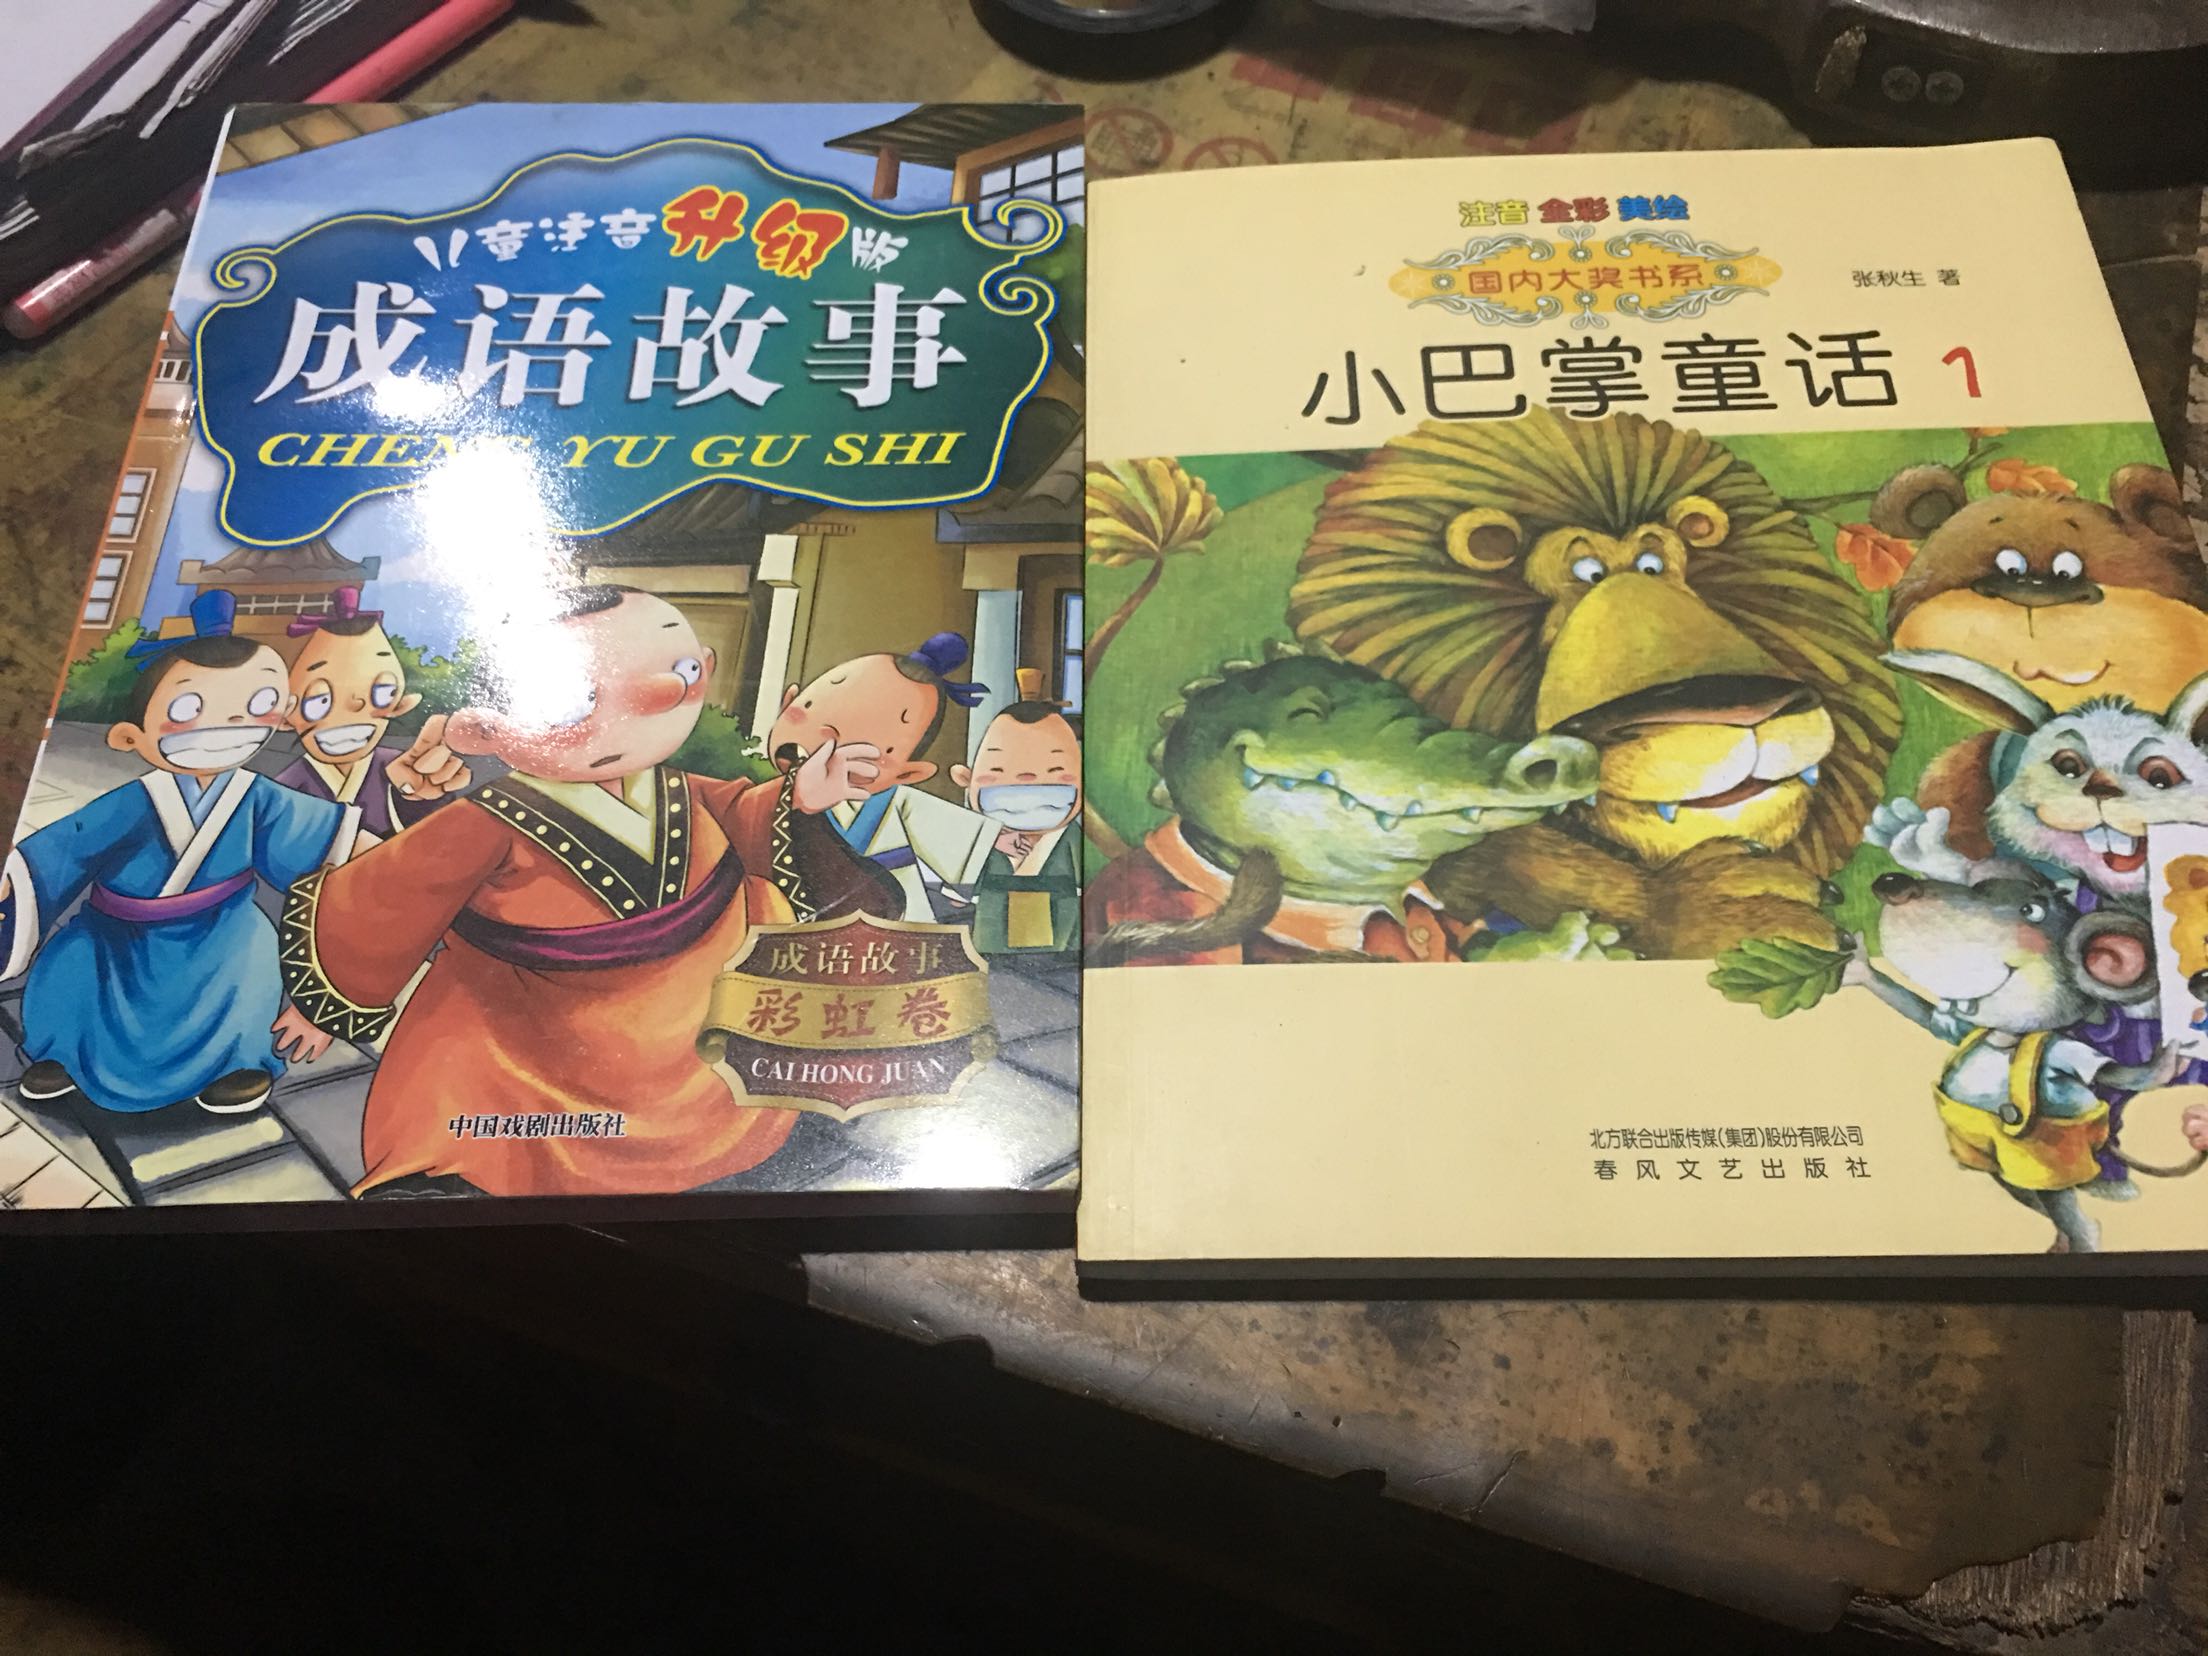 这两本书对孩子来说还是不错